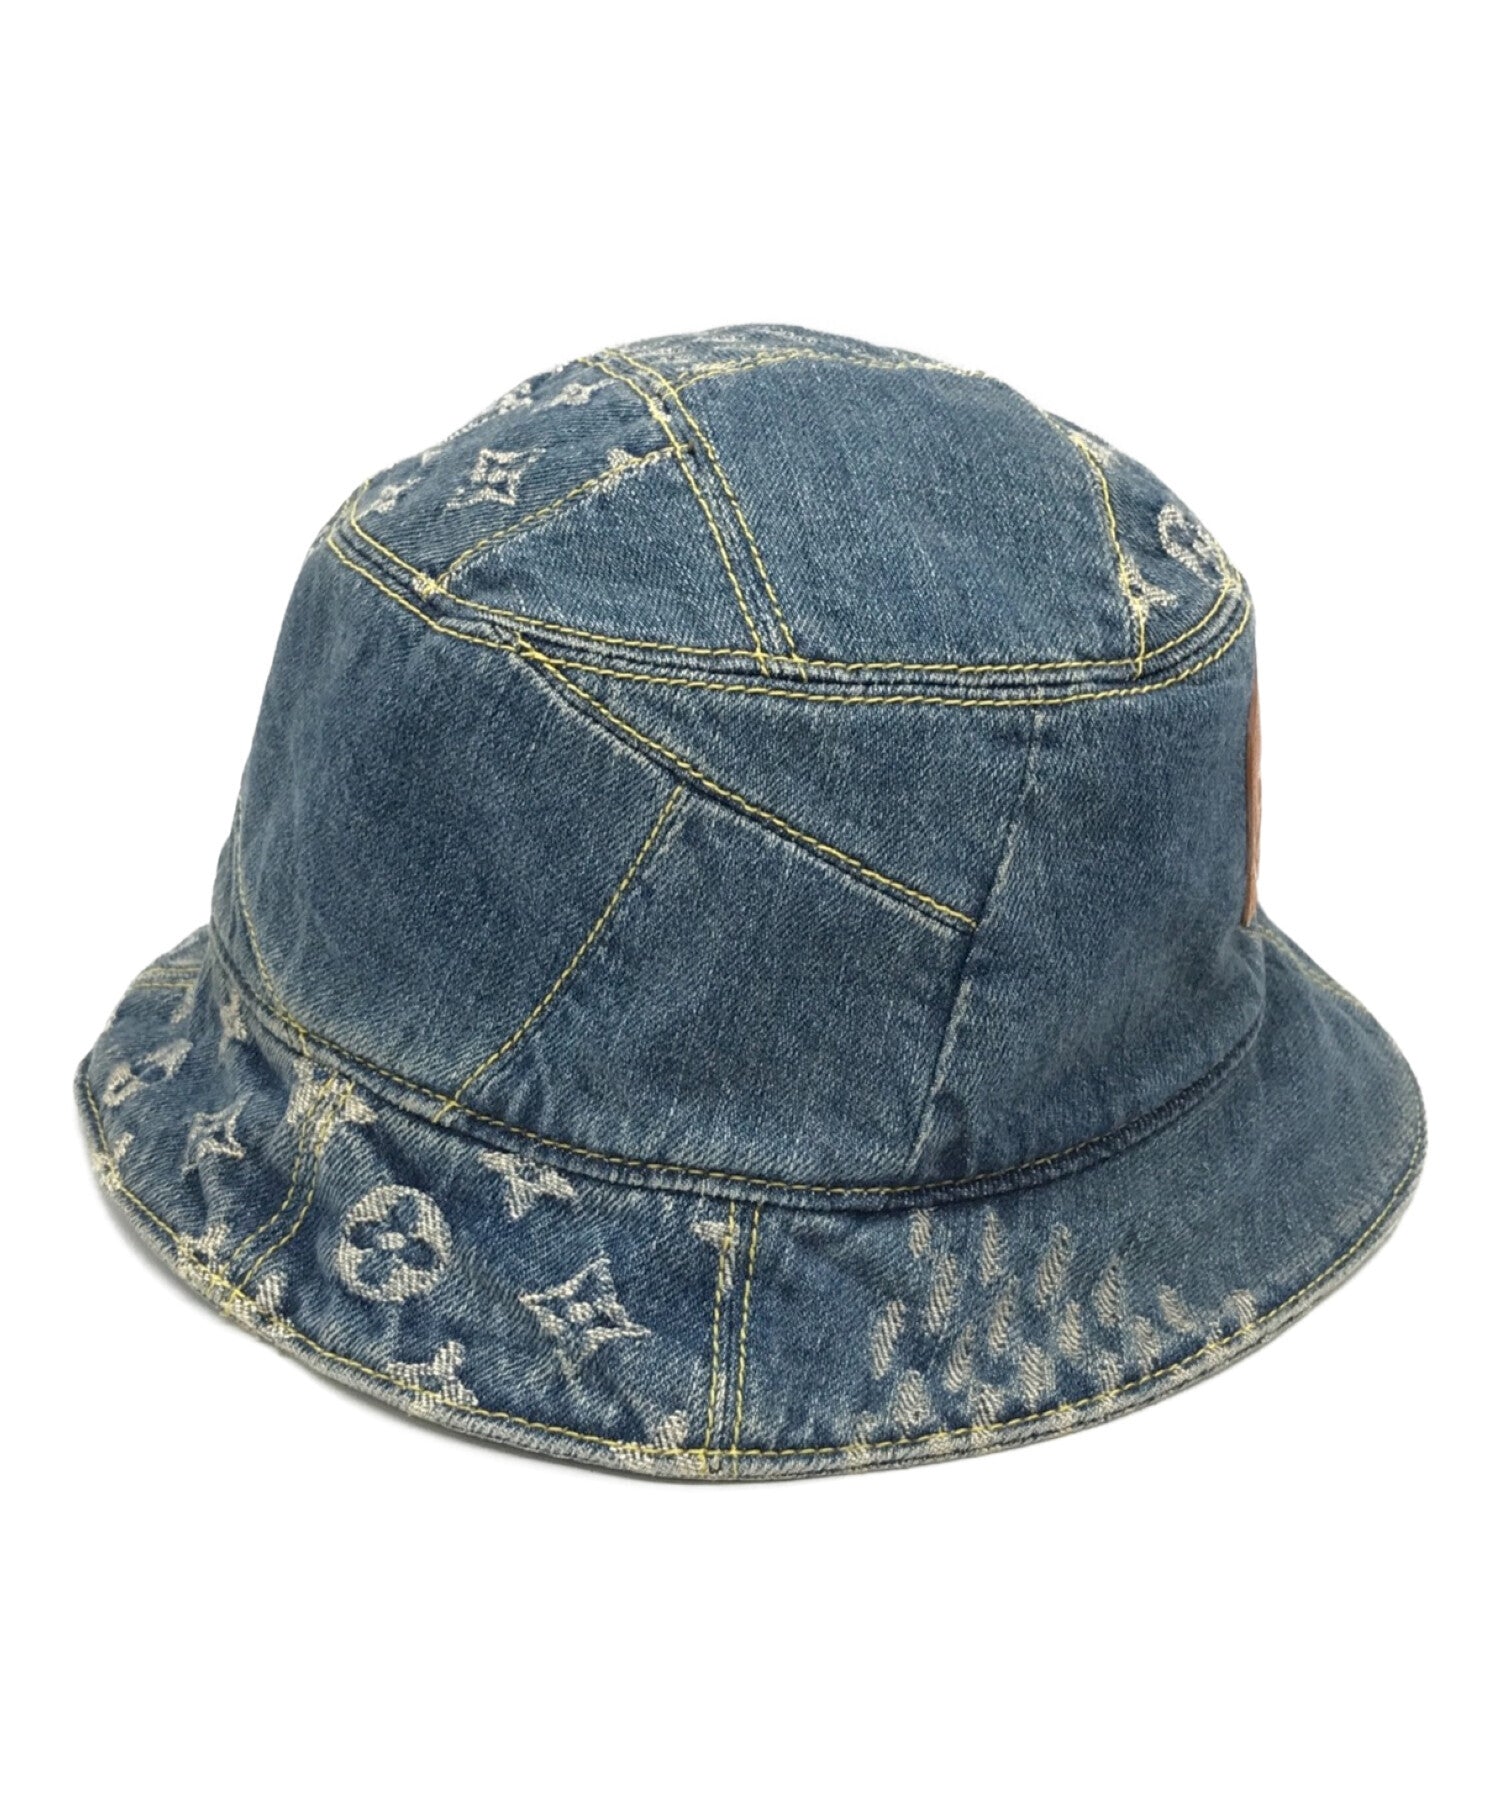 Vuitton mp3243 bonnet denim - Gem